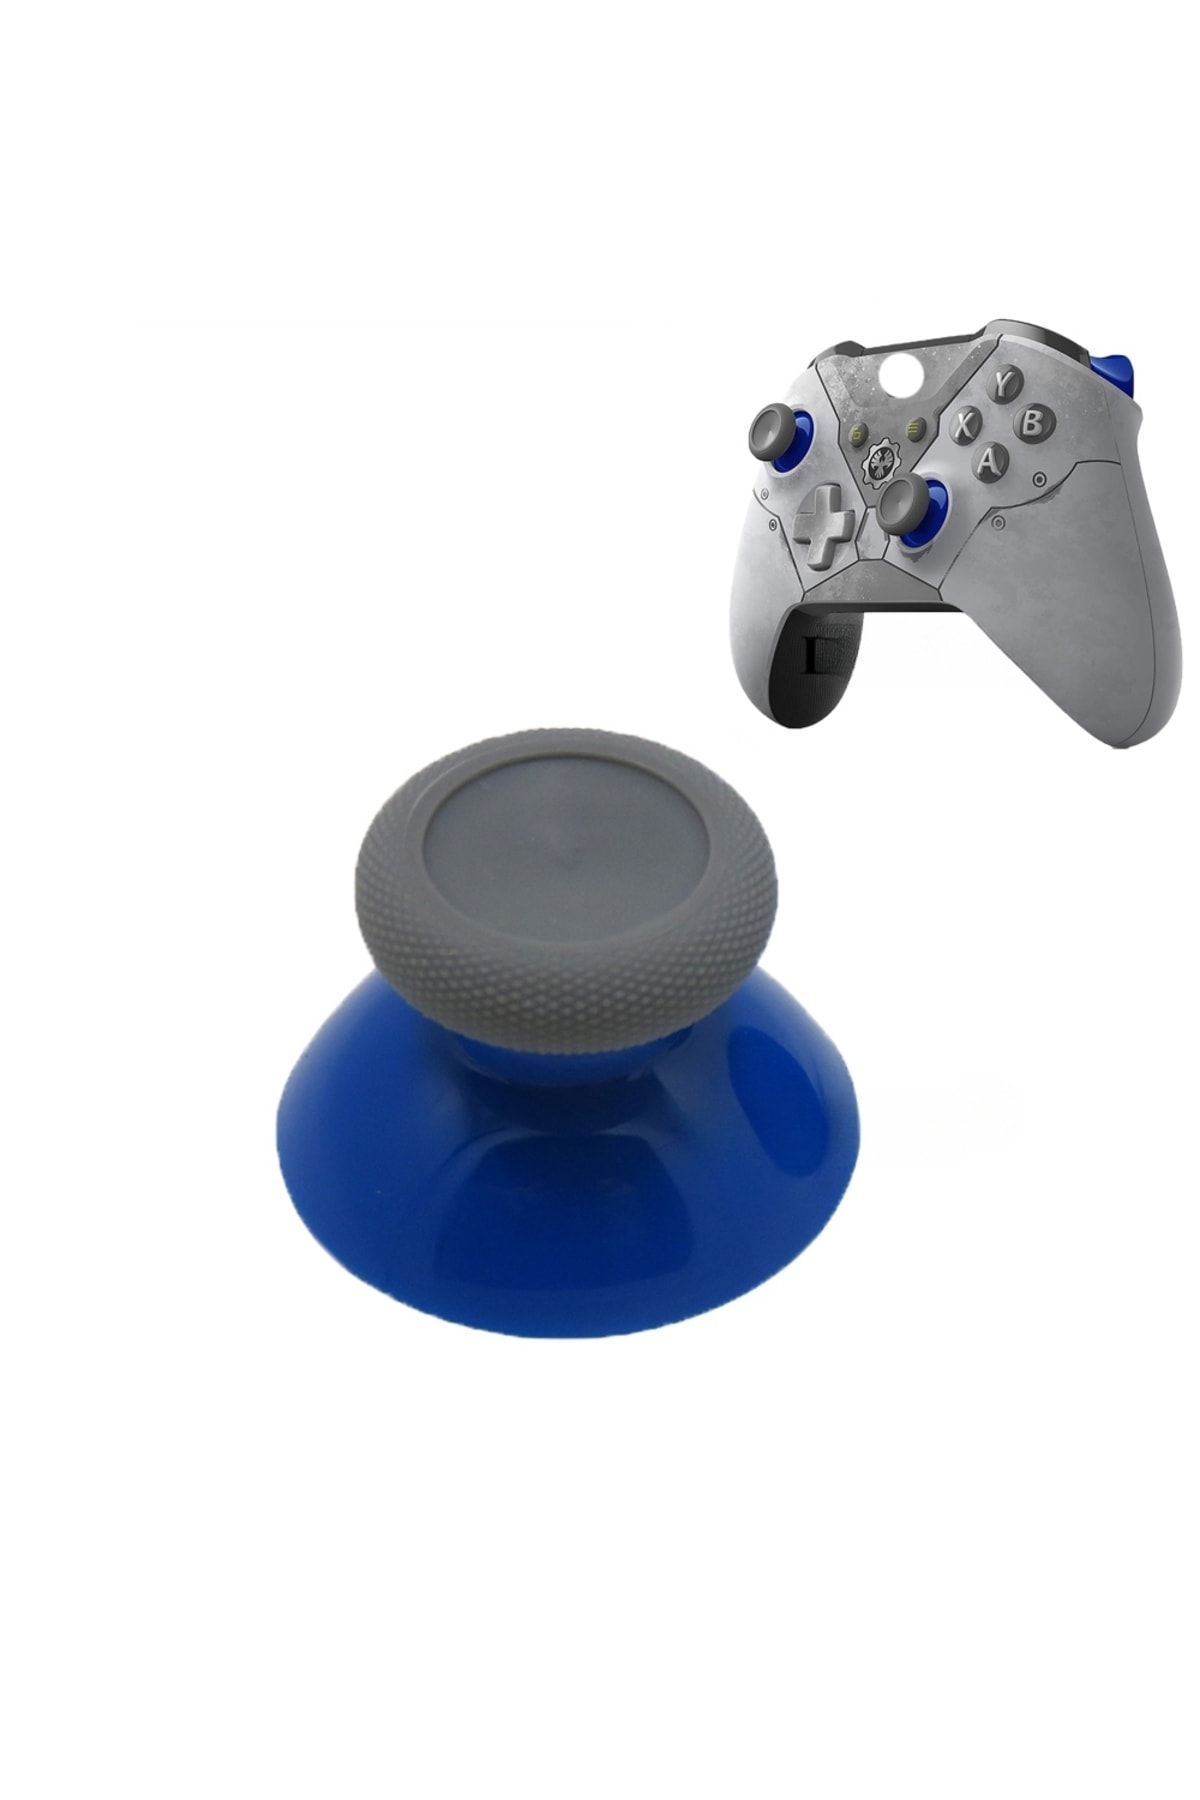 POPKONSOL 1 Adet Xbox One - One S/x - Series S/x Uyumlu Analog Topuz Renkli Başlık Gri - Mavi